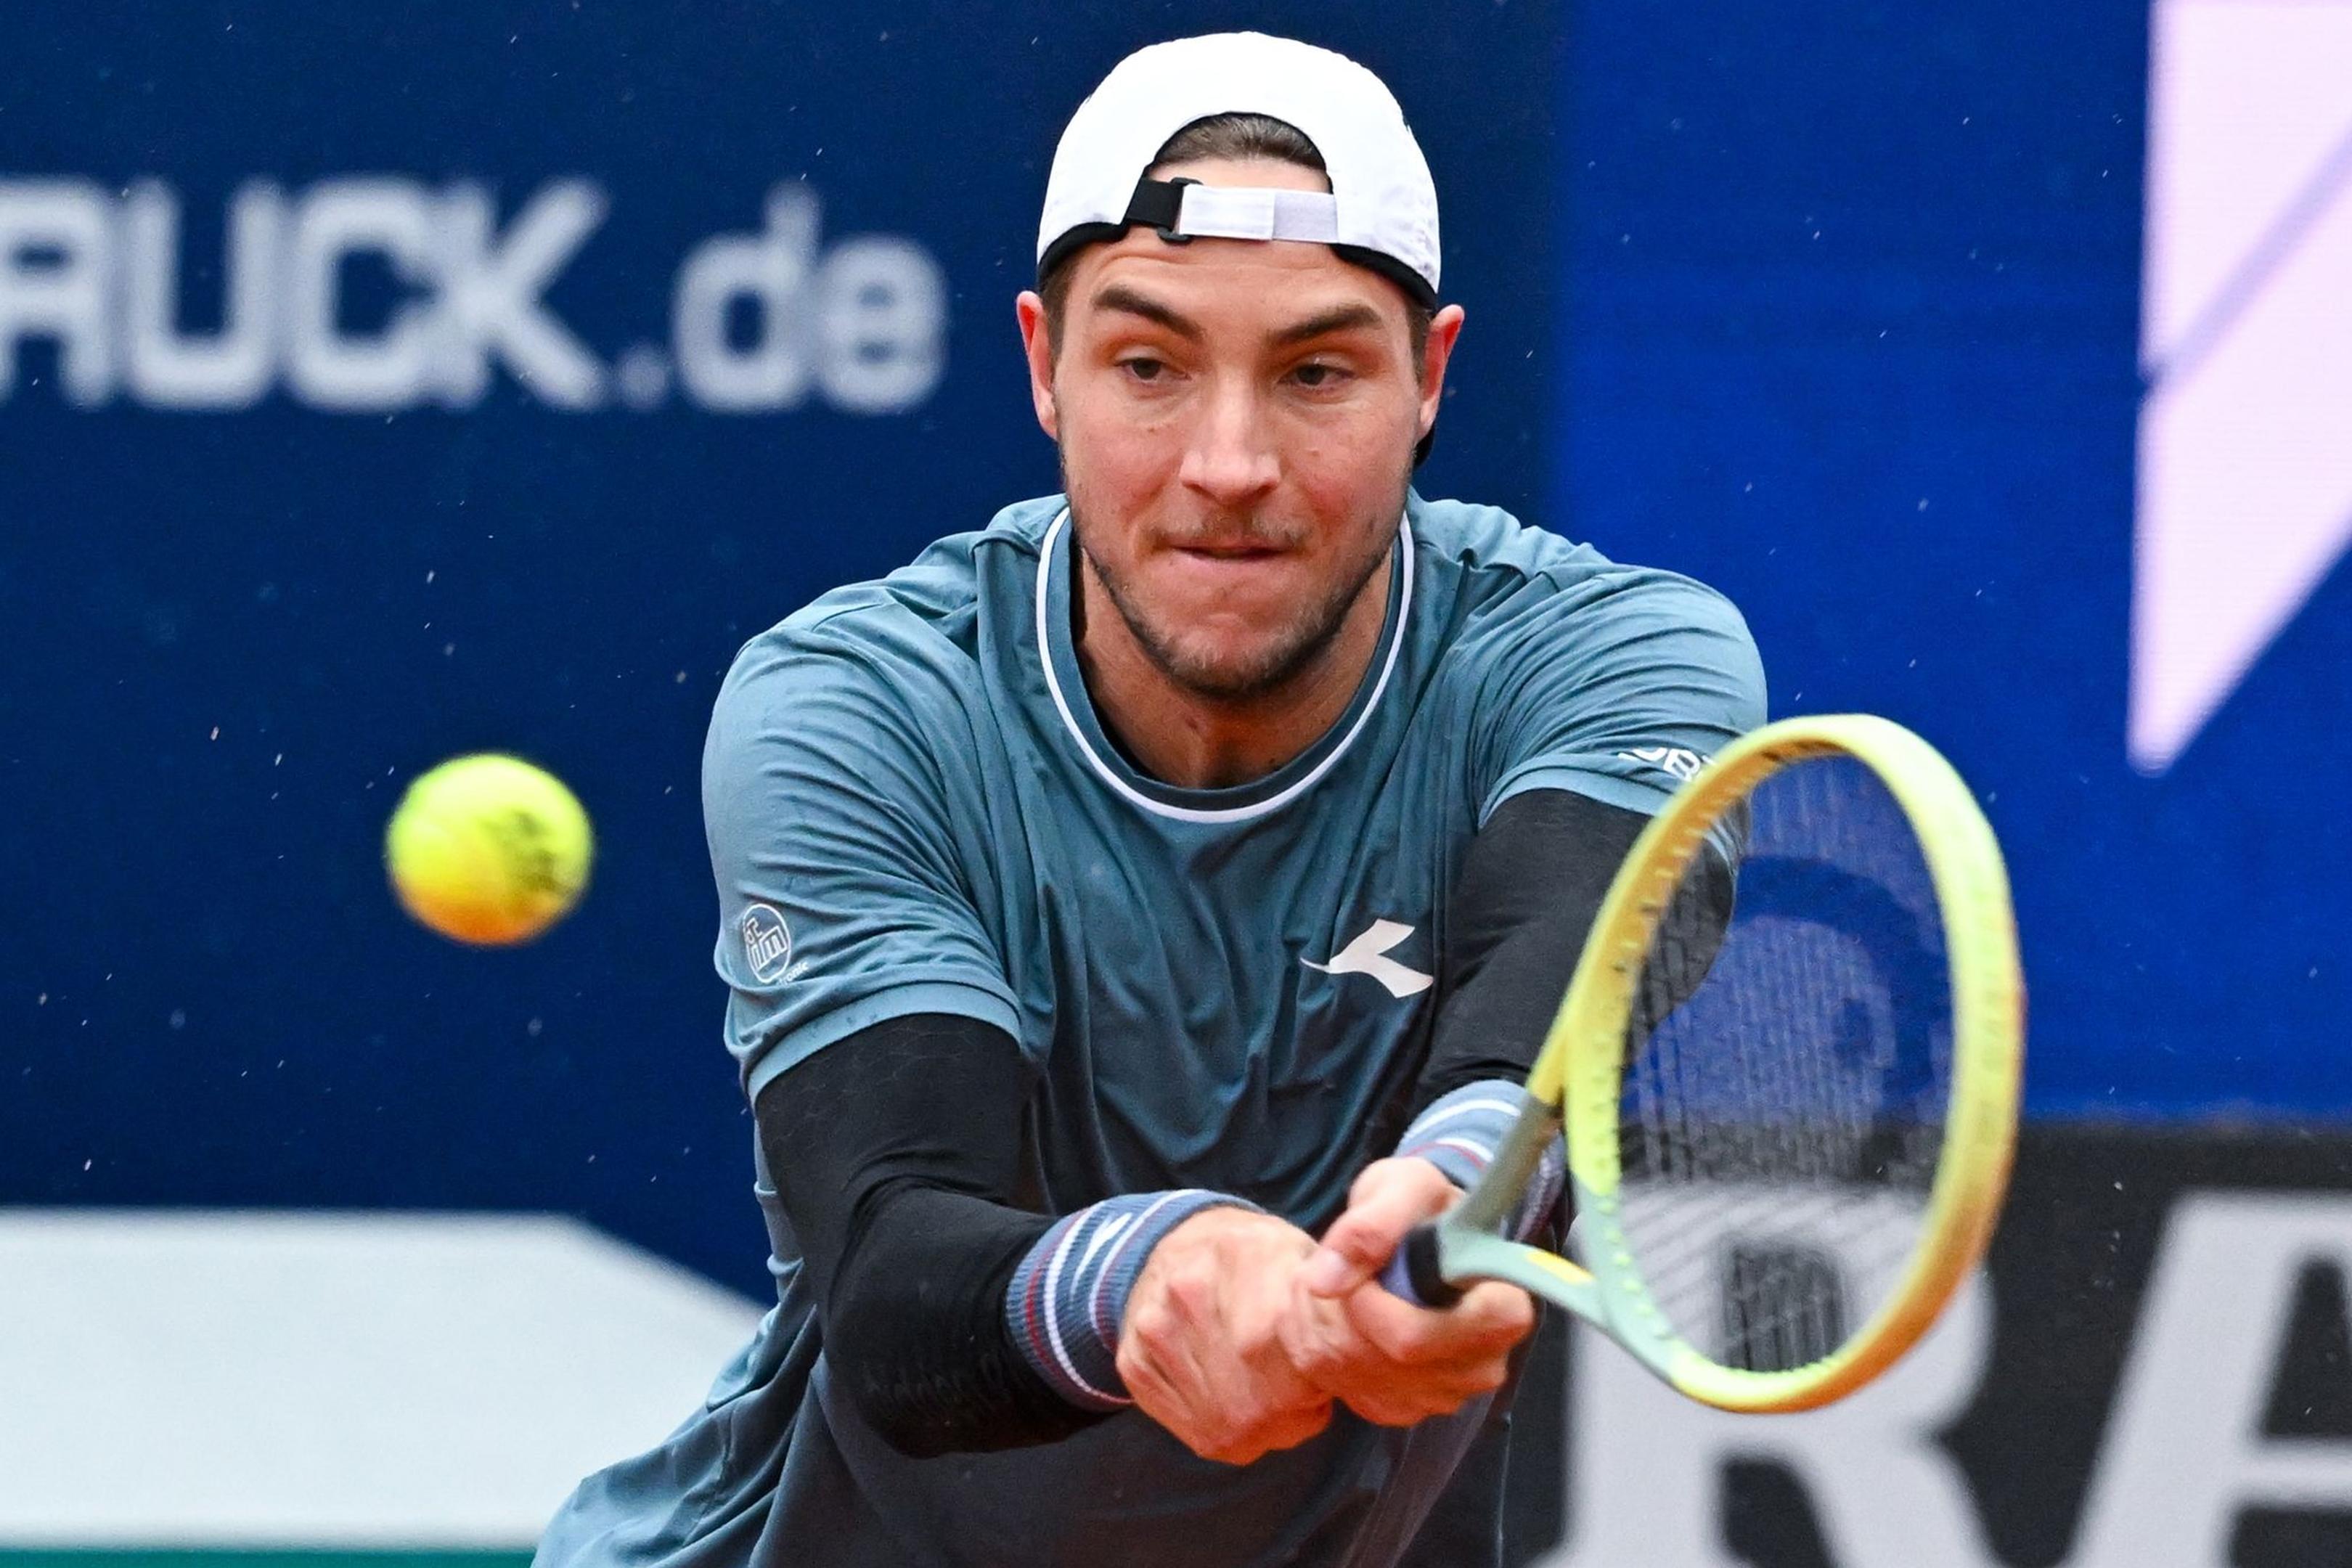 Tennisprofi Jan-Lennard Struff erreichte in München das Halbfinale.